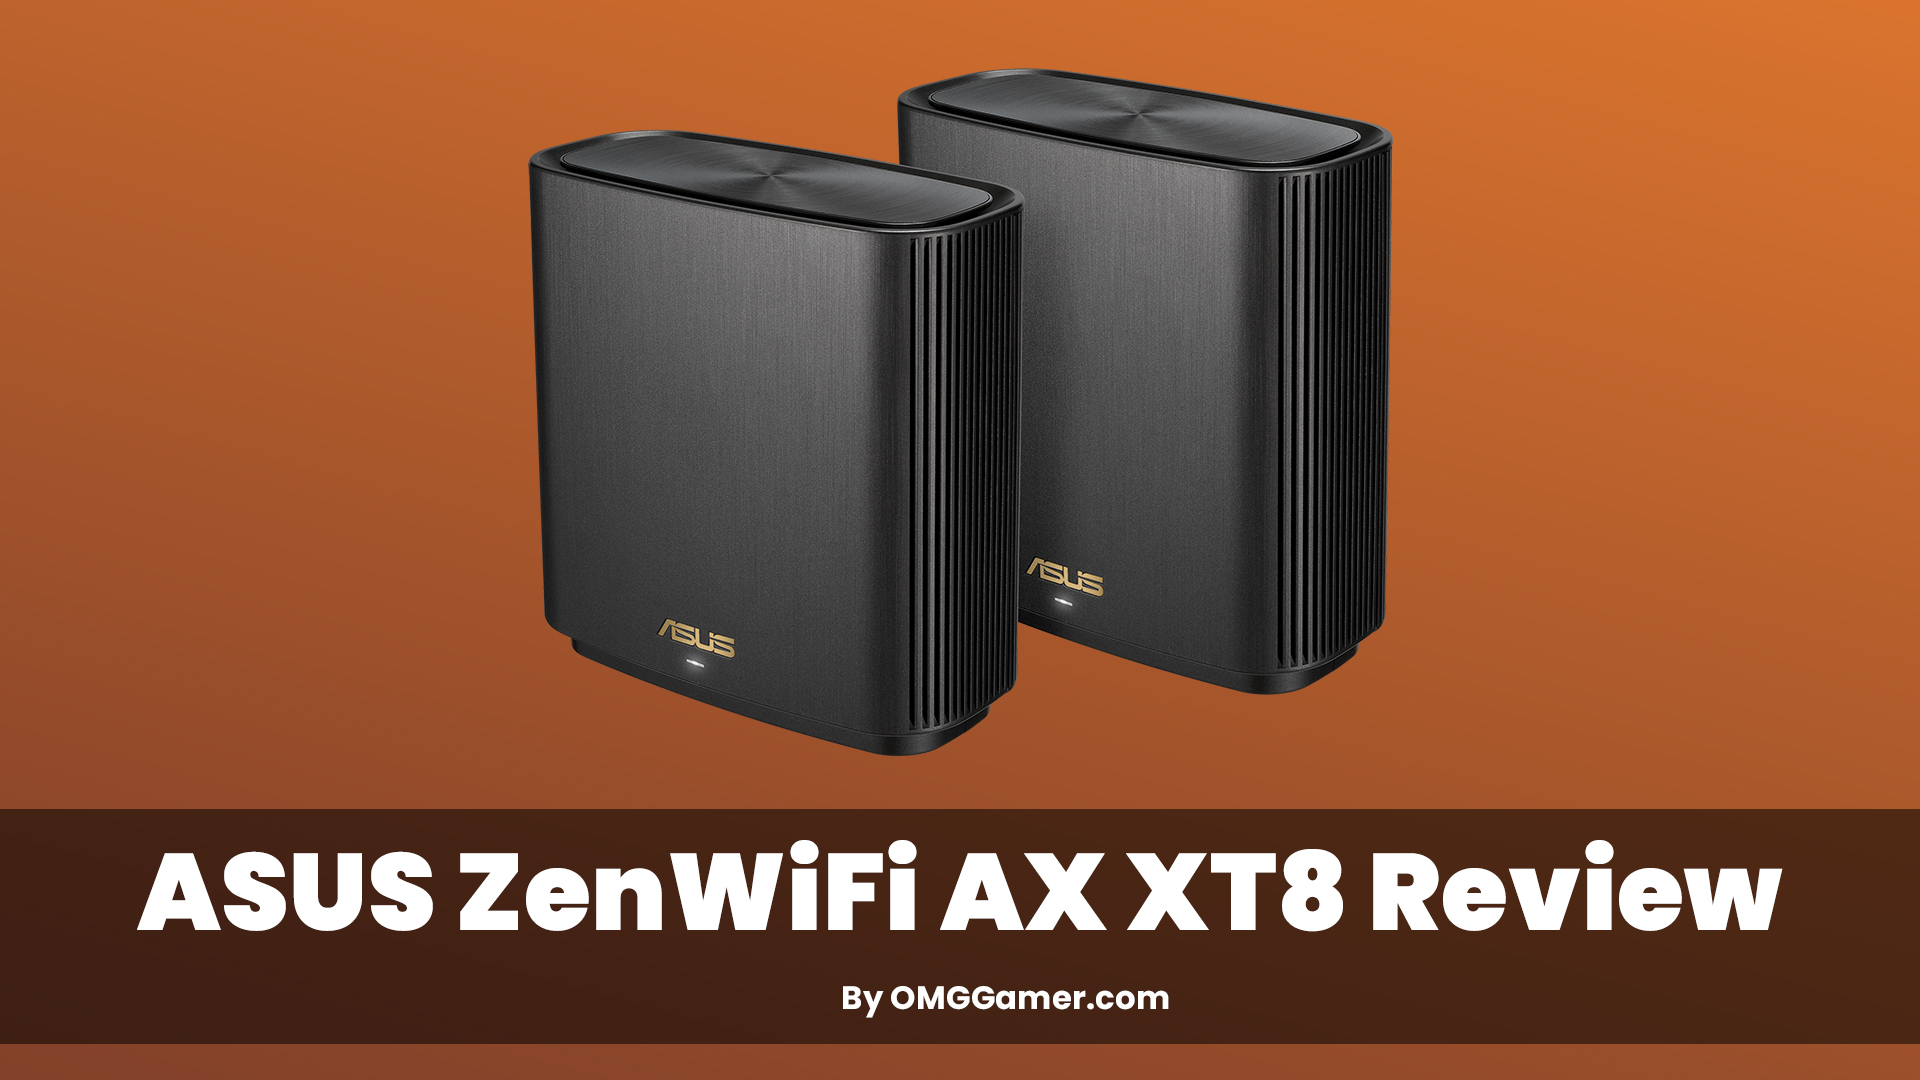 ASUS ZenWiFi AX XT8 Review